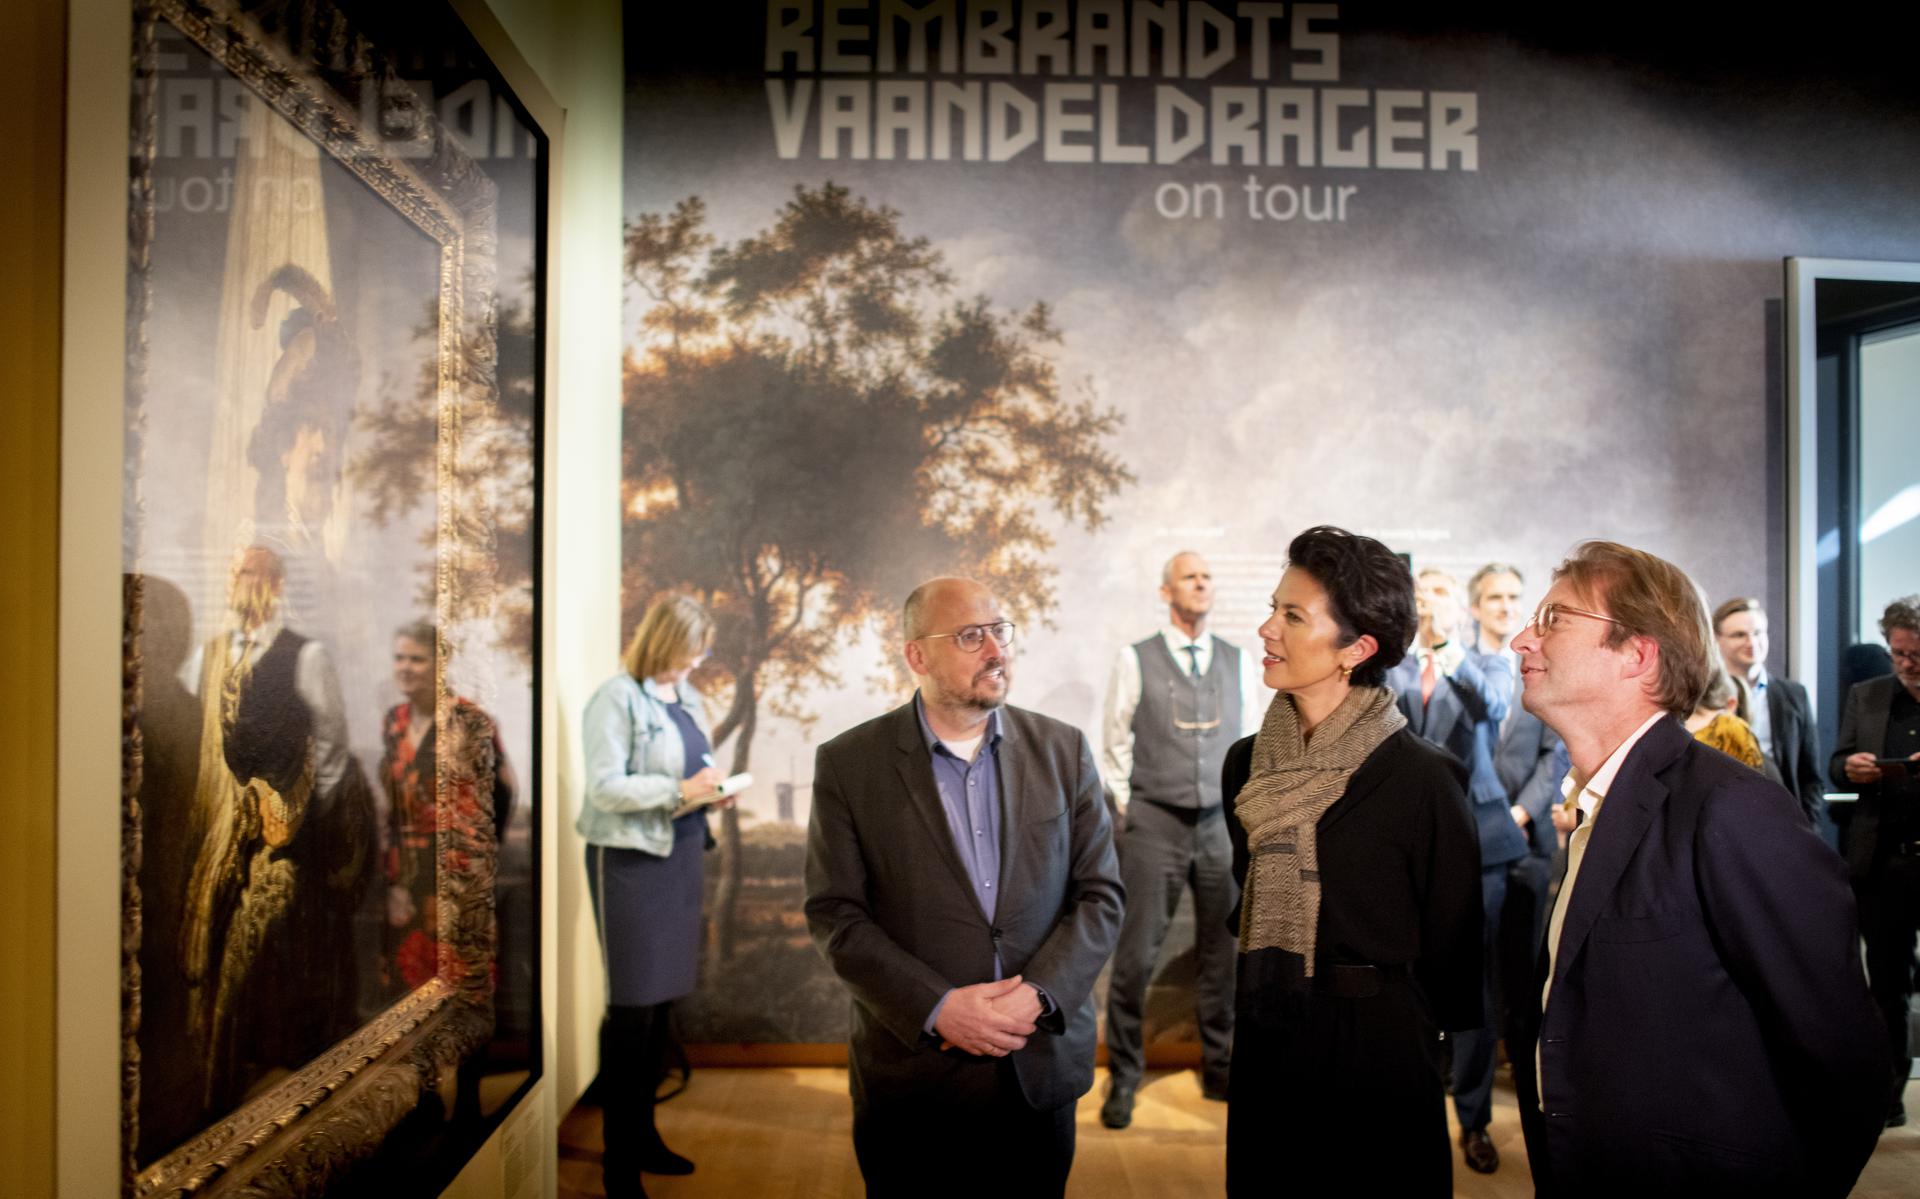 De tournee van De vaandeldragen van Rembrandt werd eind april 2022 afgetrapt in het Fries Museum in aanwezigheid van  staatssecretaris Gunay Uslu, directeur Rijksmuseum Taco Dibbits en museumdirecteur Kris Callens (links).